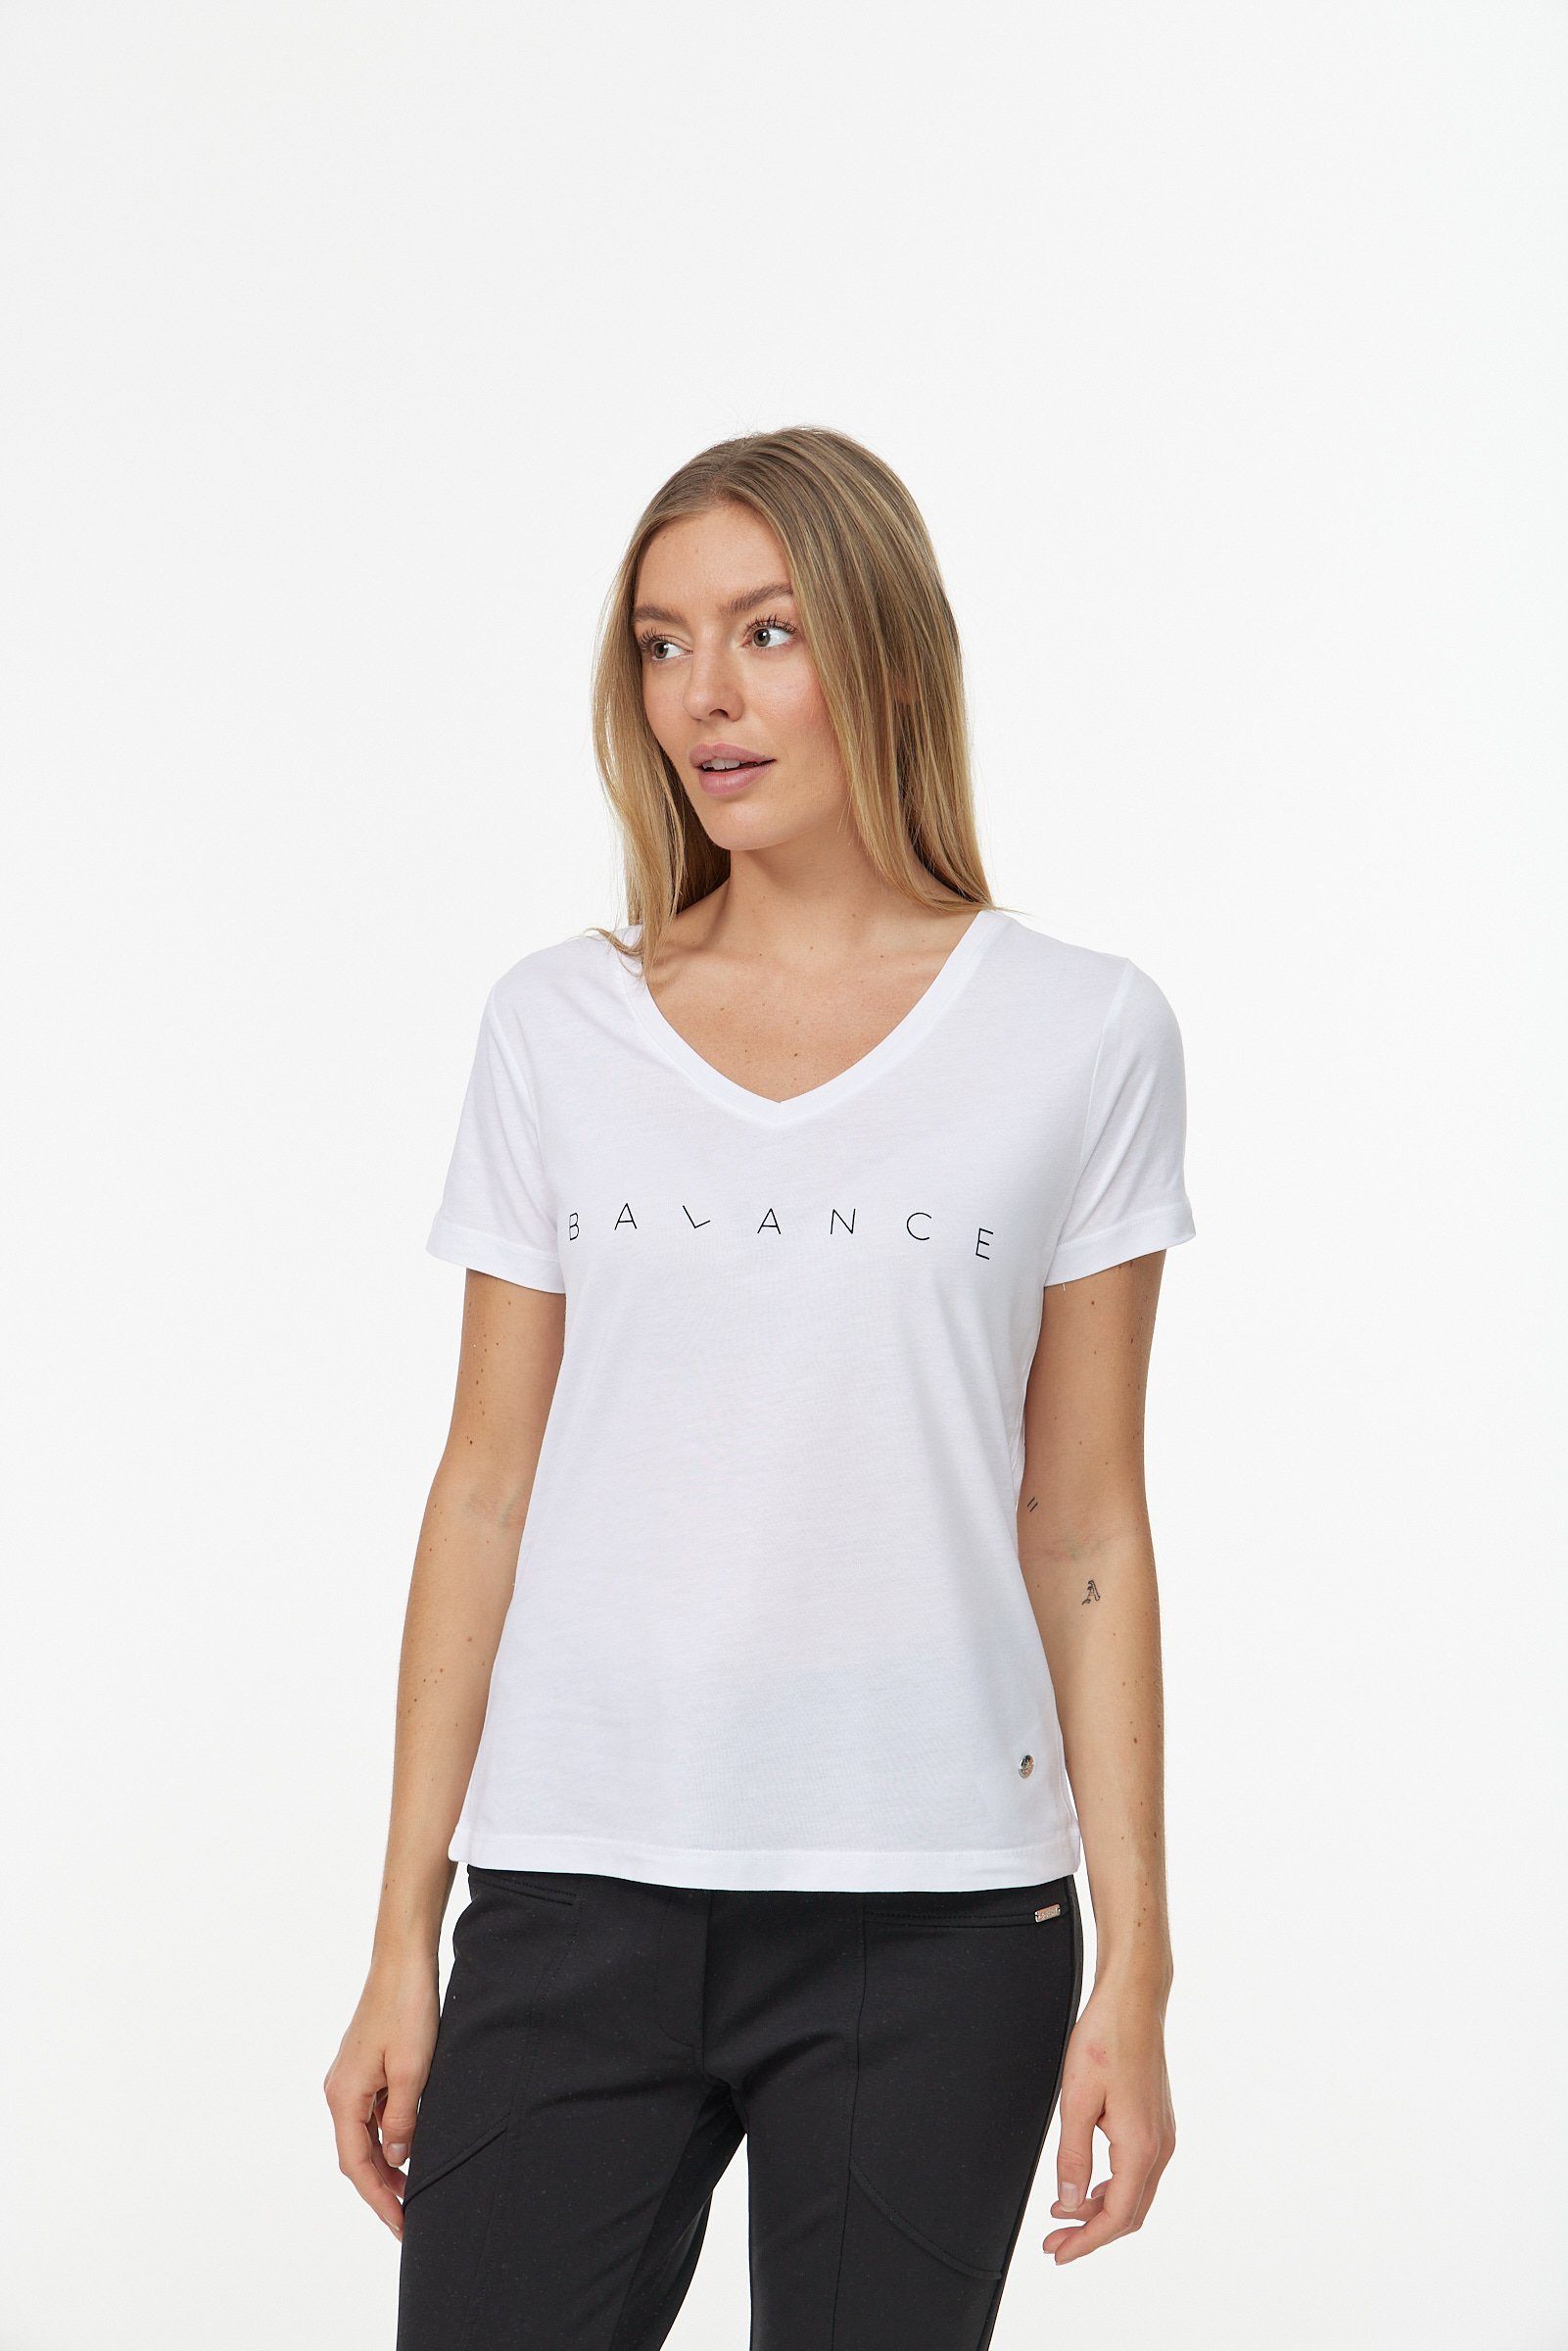 weiß-schwarz in Design Decay schlichtem T-Shirt